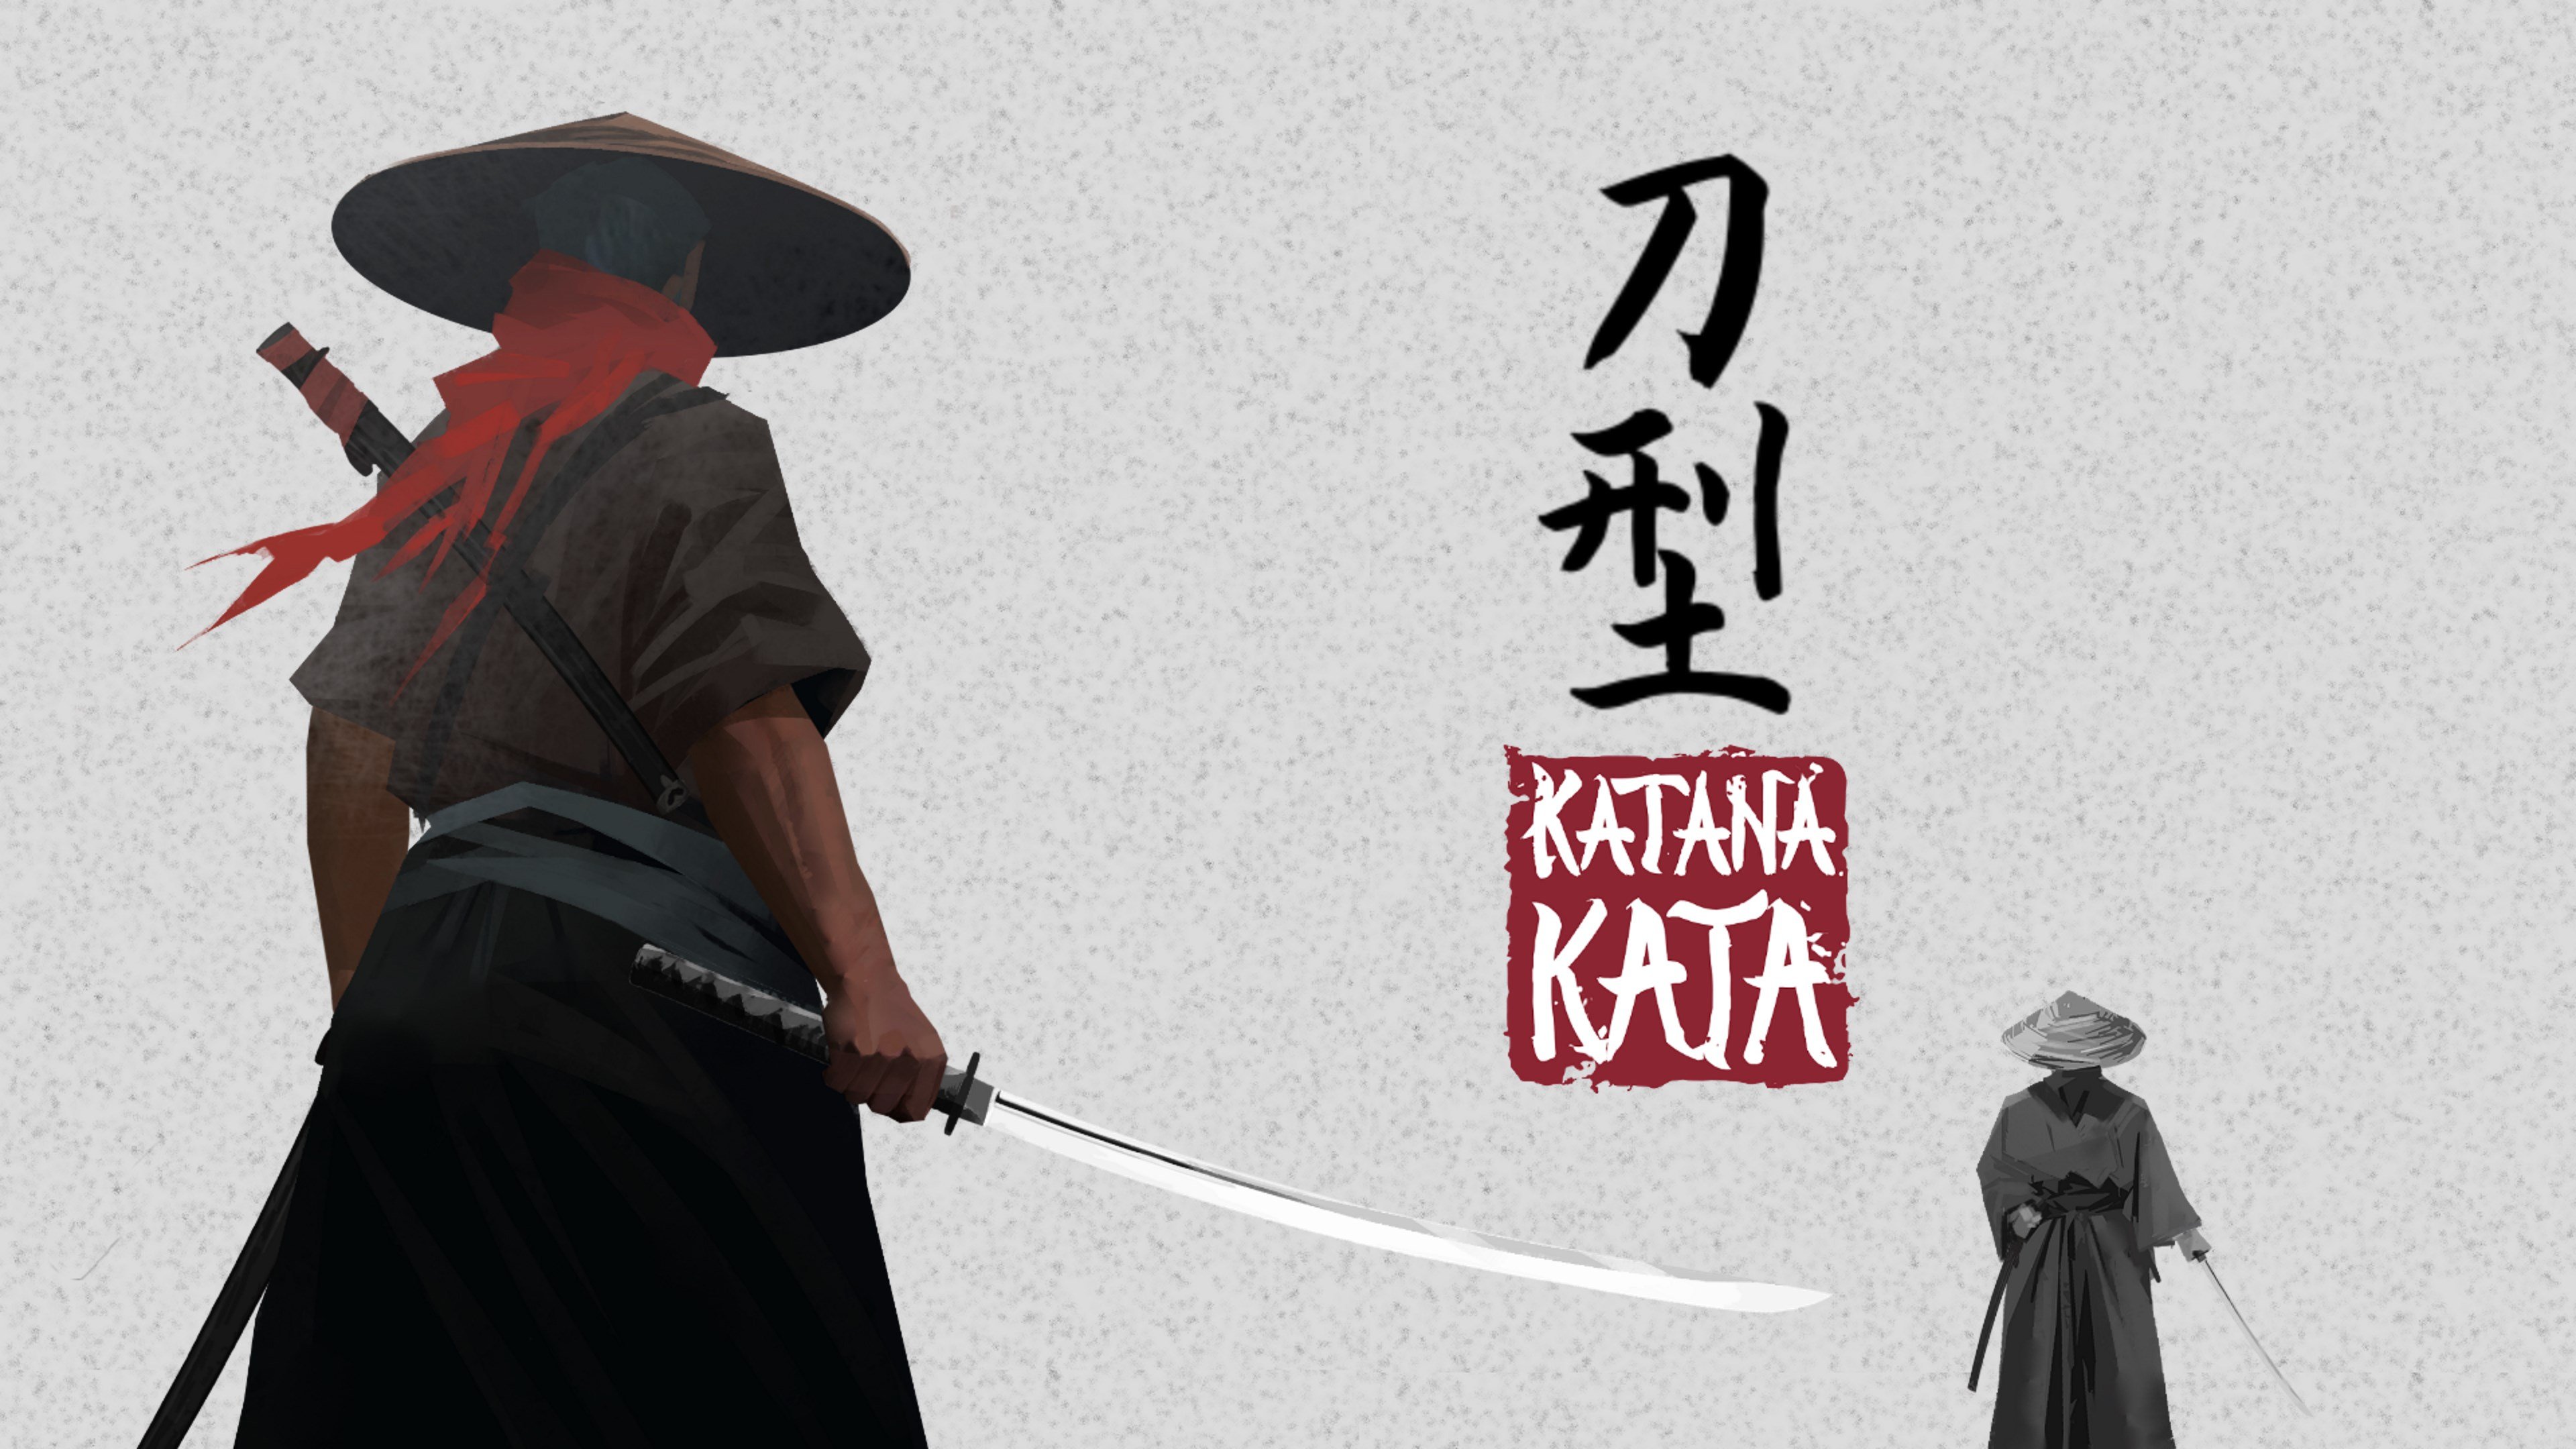 Katana Kata cover image